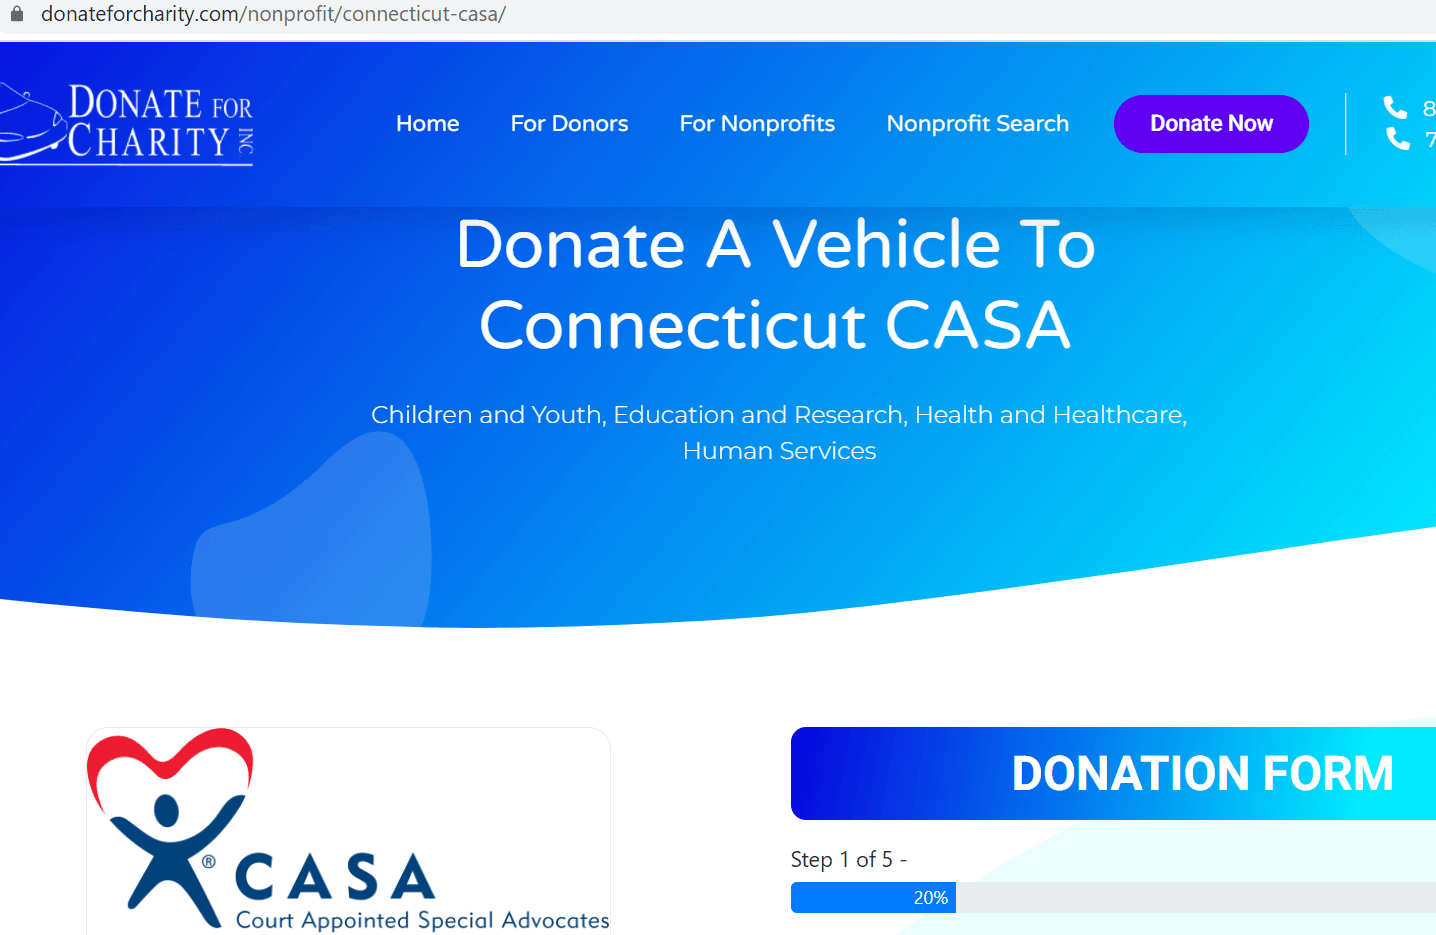 Vehicle Donation